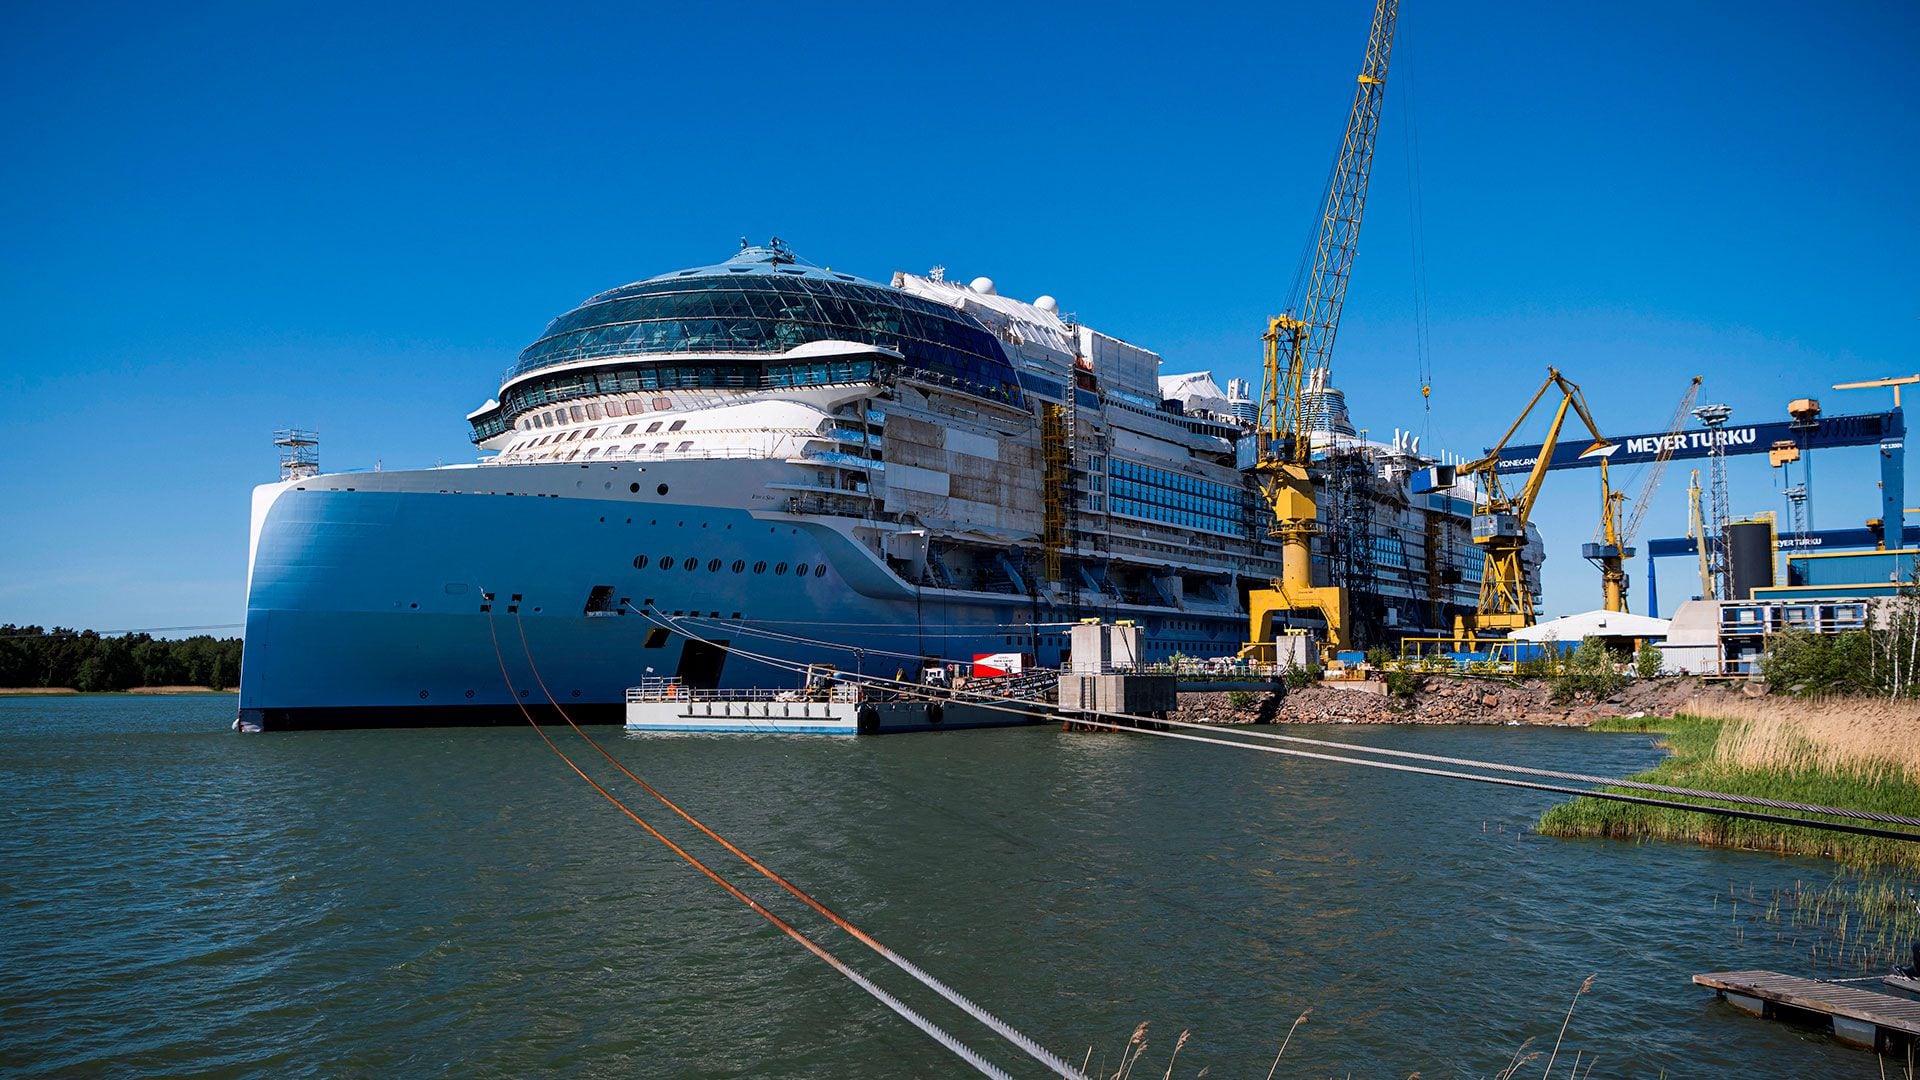 ”Este barco es actualmente, que sepamos, el crucero más grande del mundo”, declaró Tim Meyer, director general del astillero Meyer Turku, encargado de su construcción en la costa suroeste de Finlandia. AFP